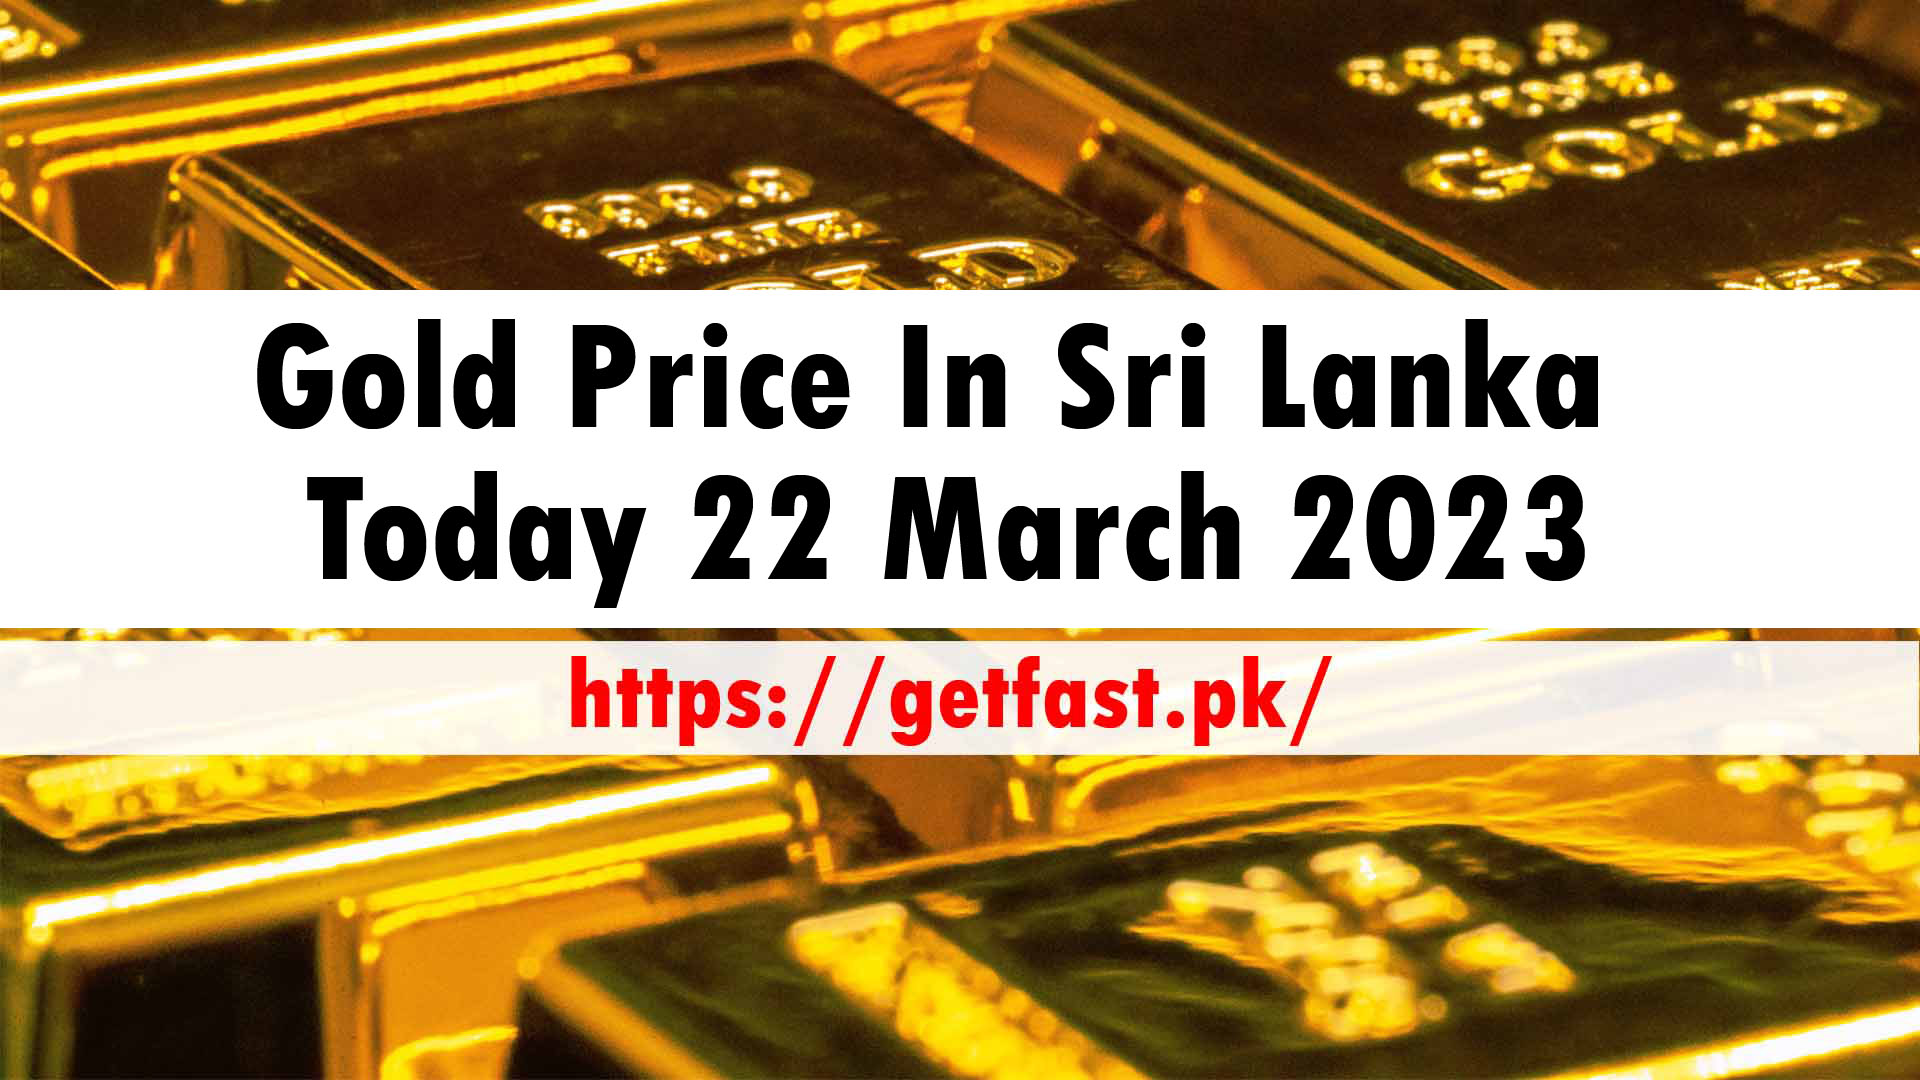 Gold Price In Sri Lanka Today 22 March 2023